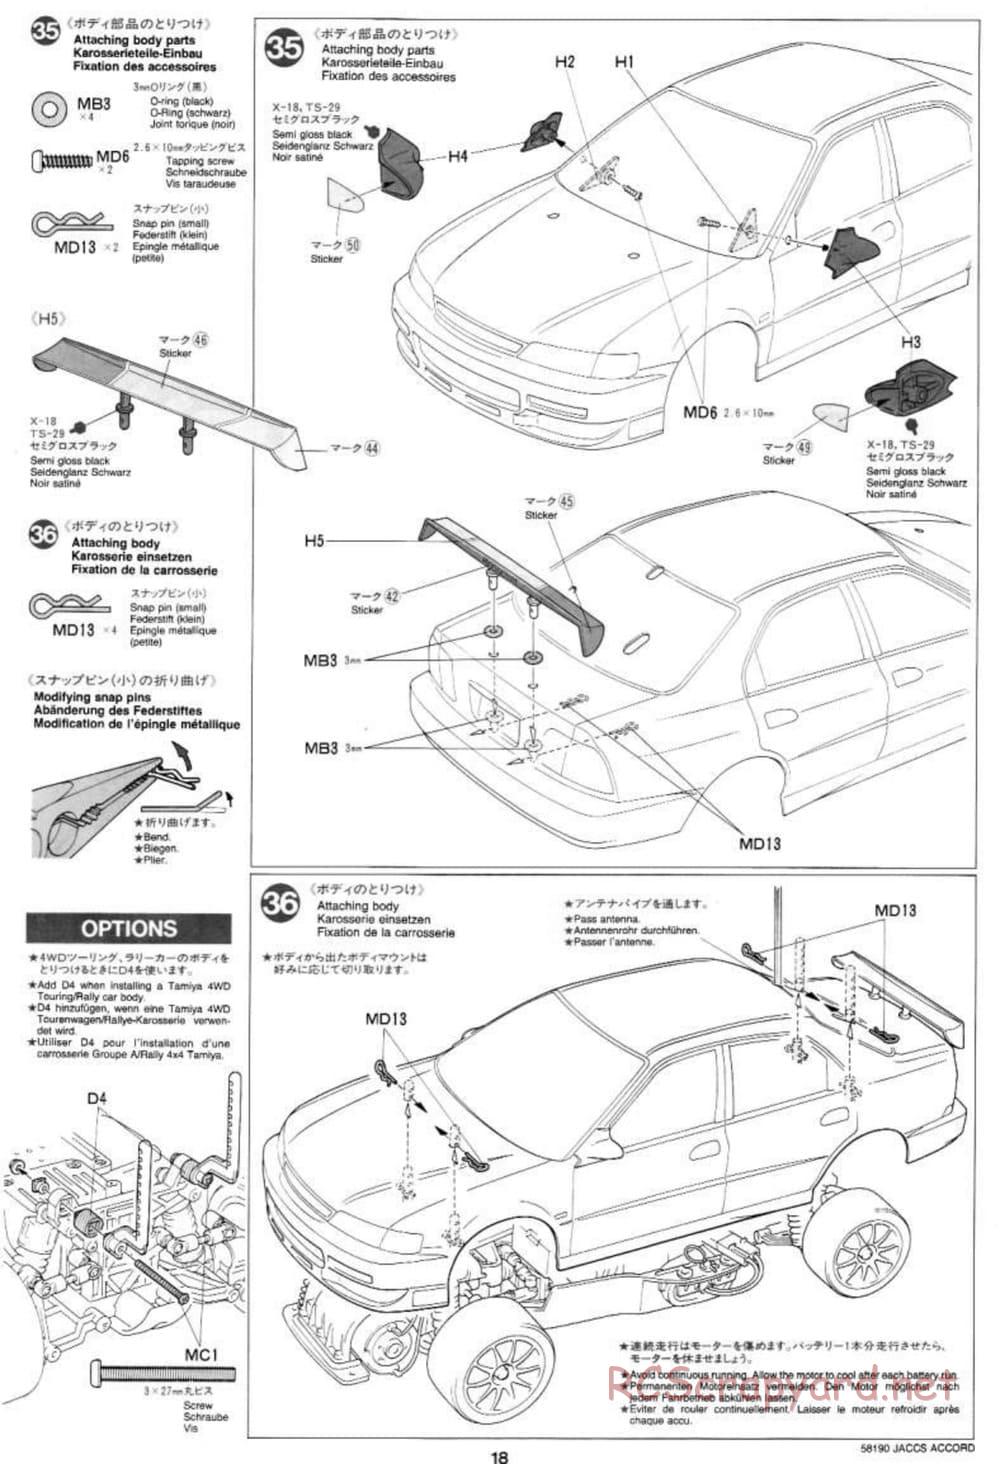 Tamiya - JACCS Honda Accord - FF-01 Chassis - Manual - Page 18